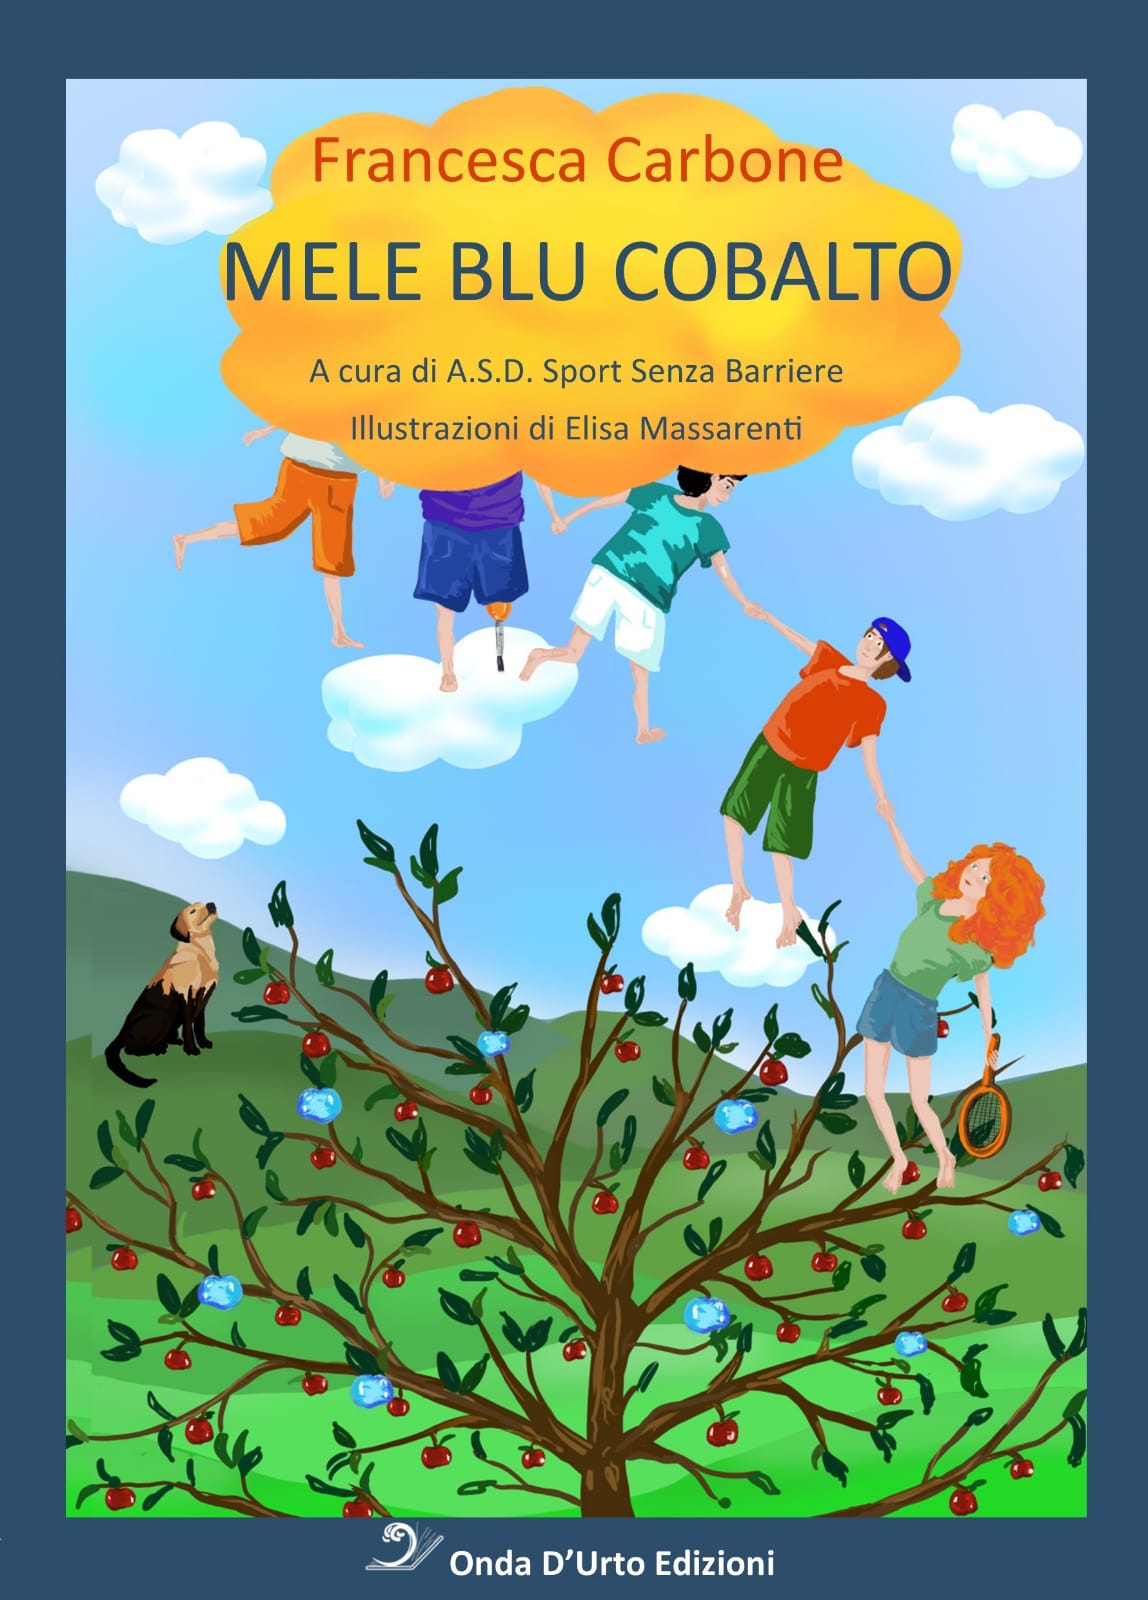 Immagine della copertina del libro "Mele Blu Cobalto" realizzato da Francesca Carbone e ispirato a Sport Senza Barriere. Illustrazioni di Elisa Massarenti.